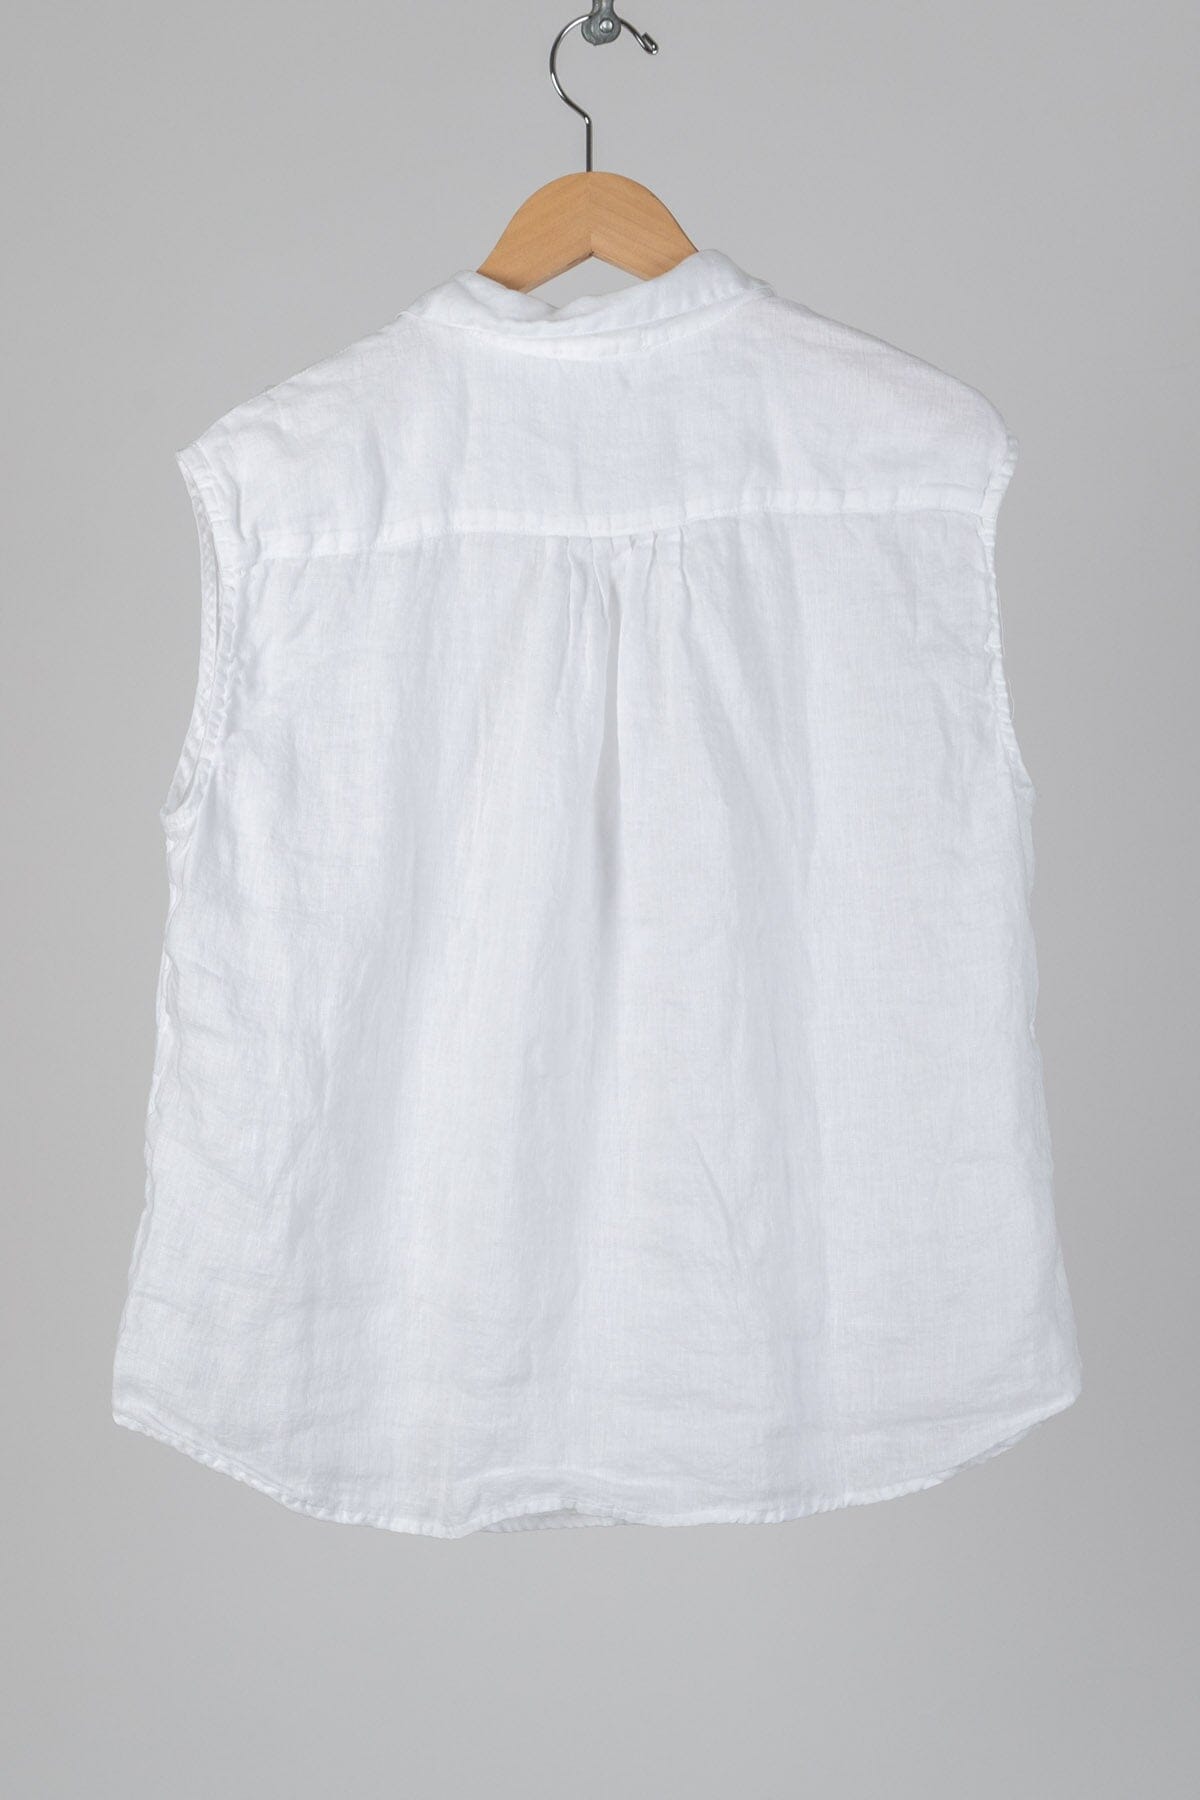 Patti - Linen S10 - Linen Shirt/Top/Tunic CP Shades 